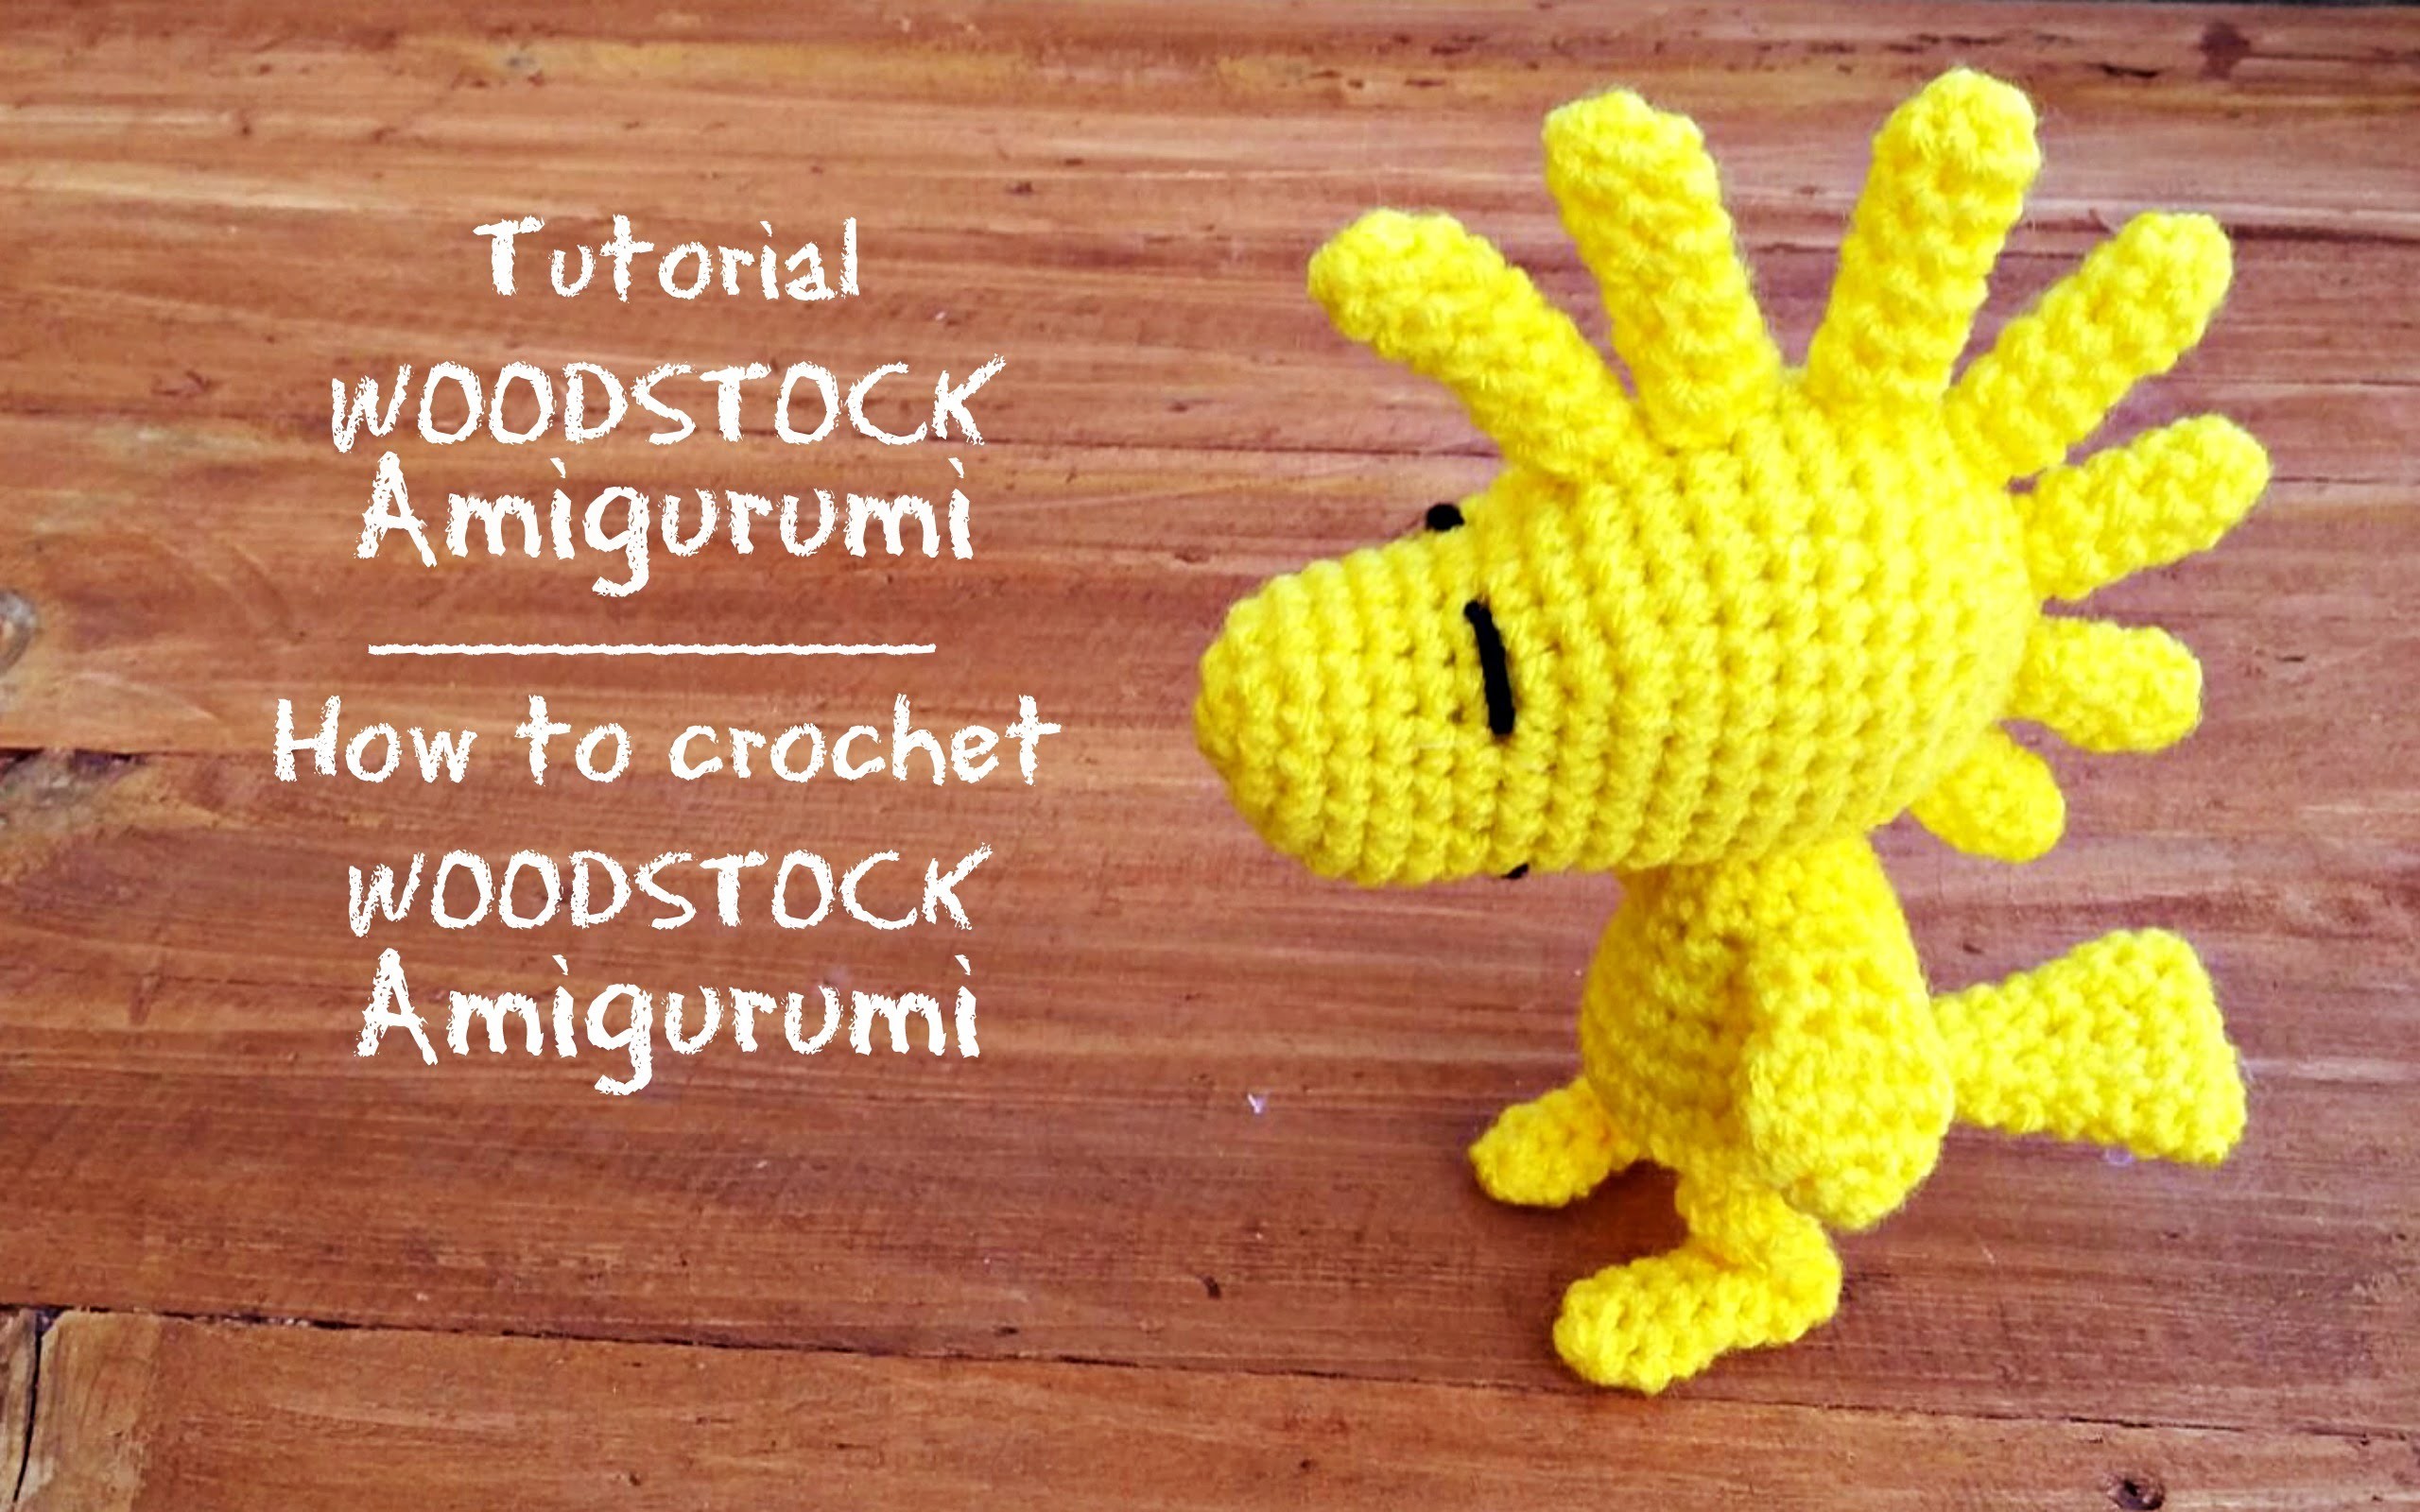 Tutorial Woodstock Amigurumi | How to crochet Woodstock Amigurumi